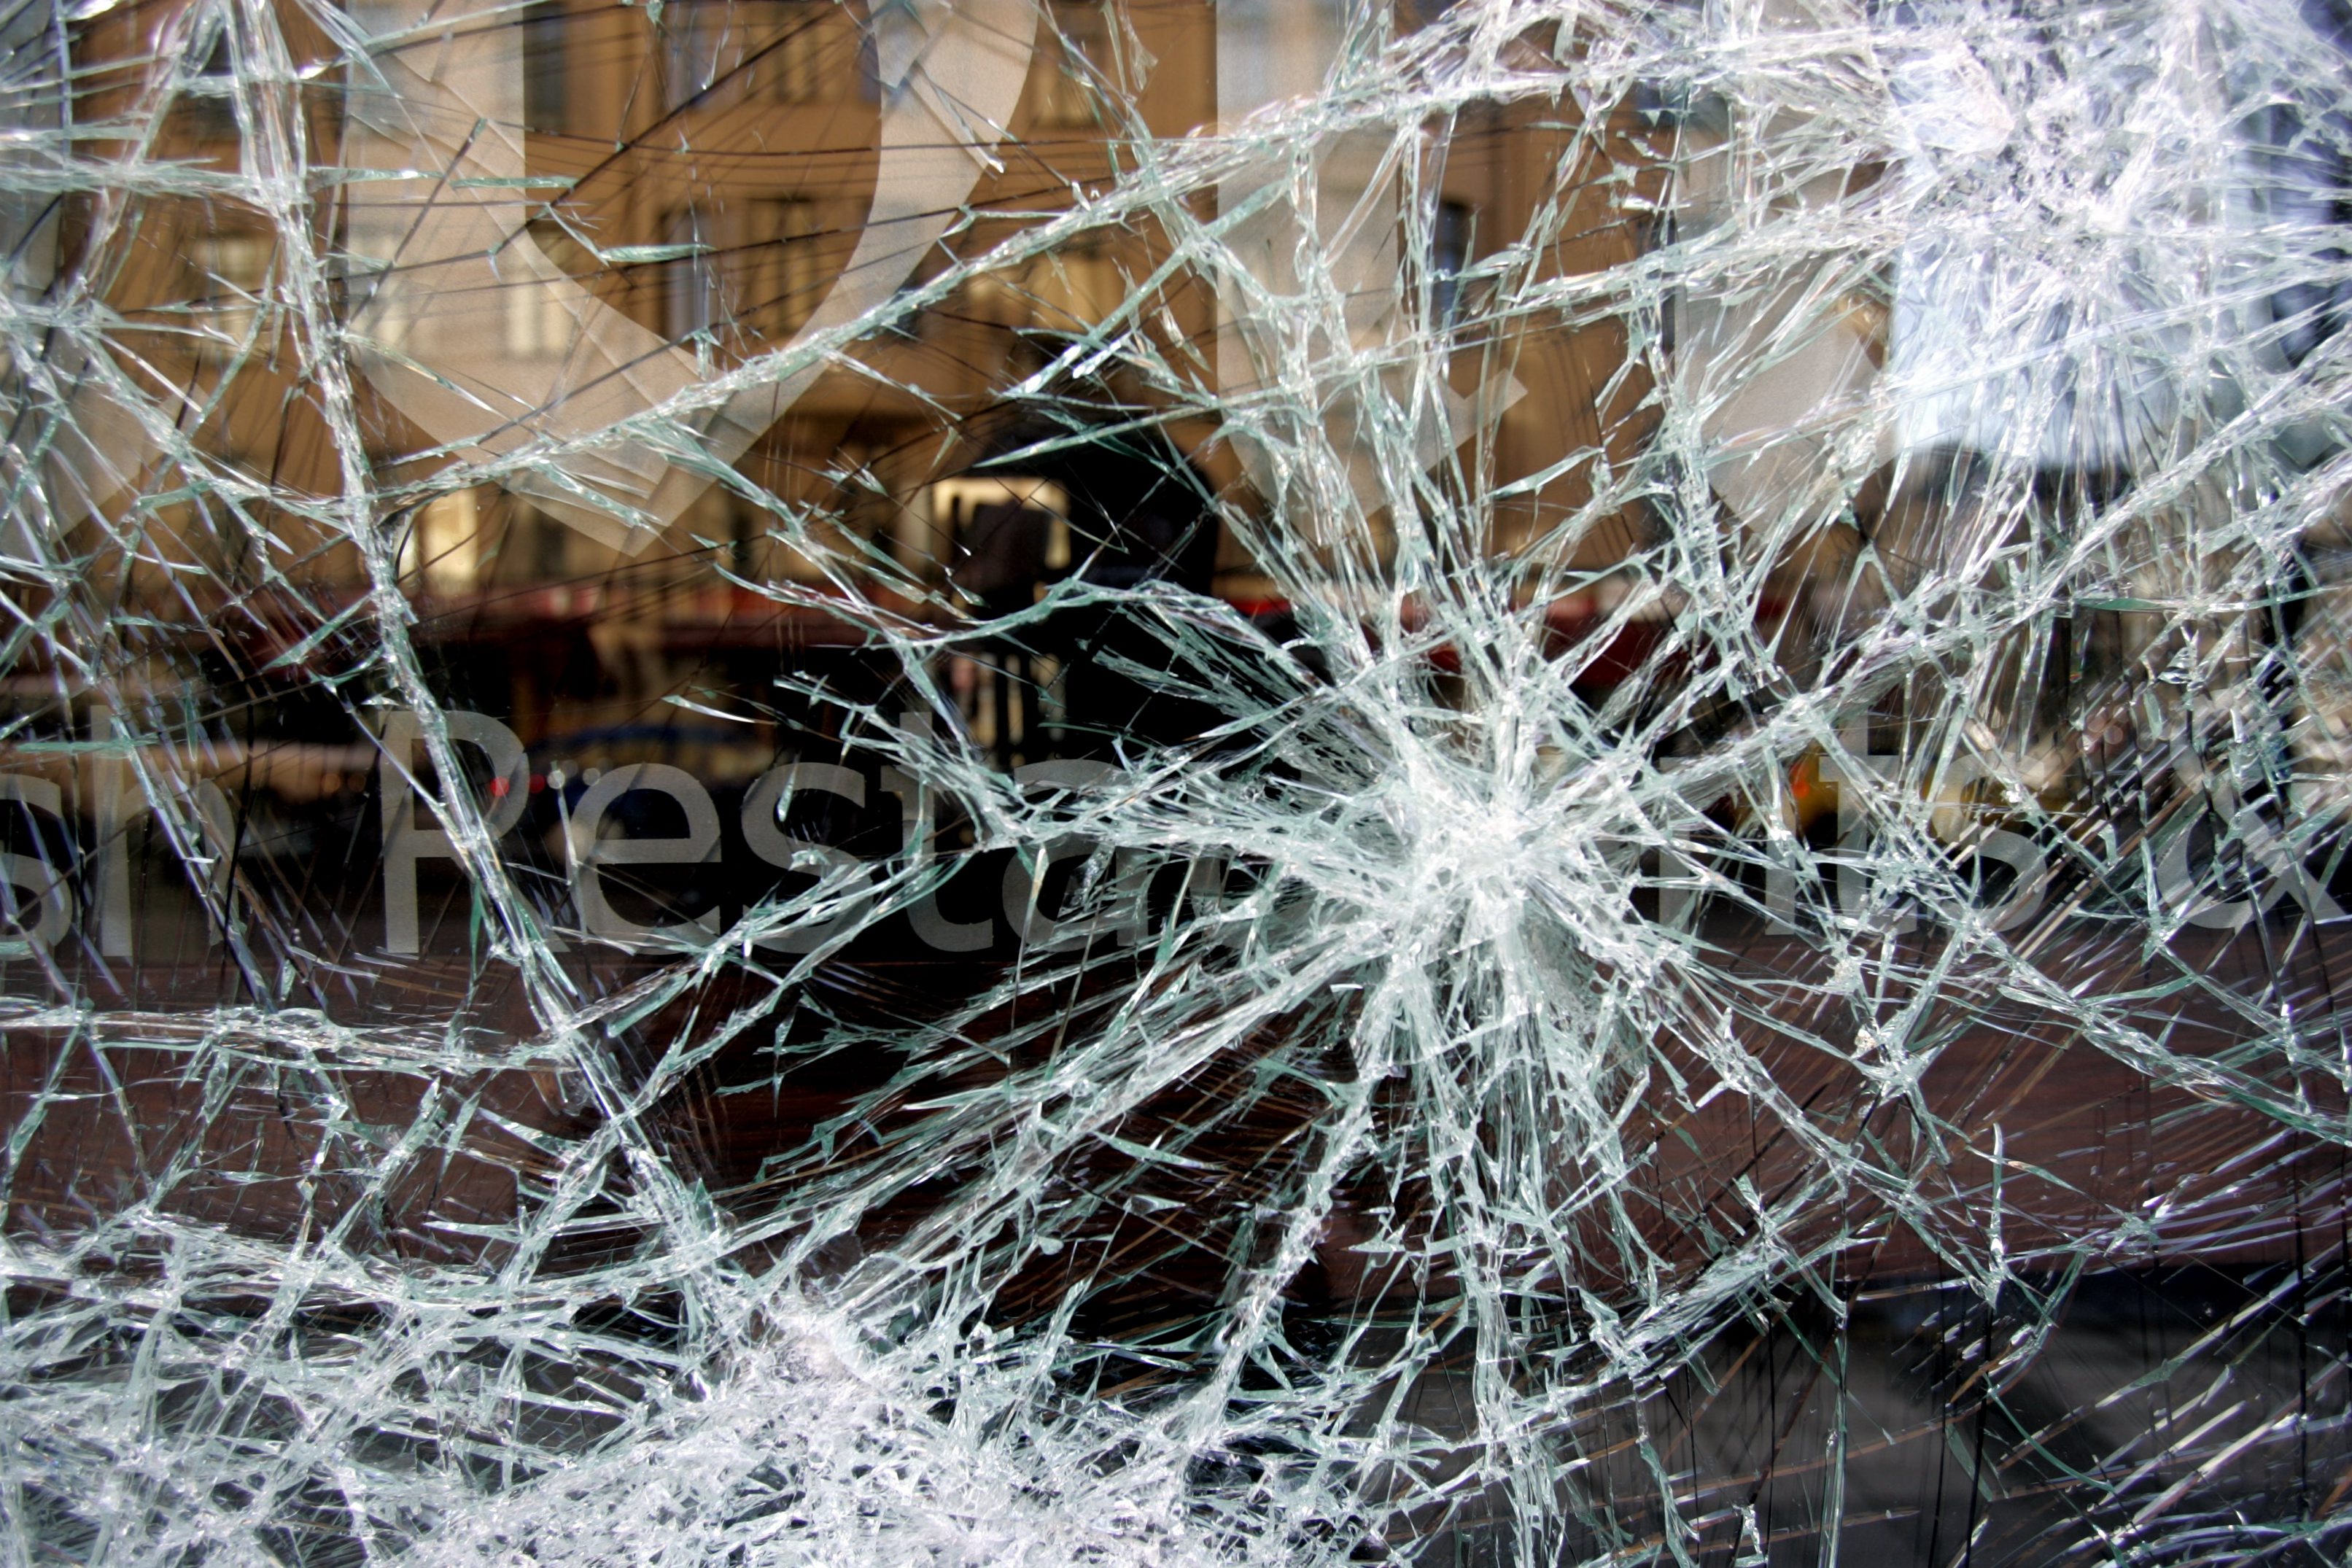 Den hjärtekrossade 18-åringen omhändertogs av polisen efter att han krossat 21 fönsterrutor på tisdagsmorgonen.